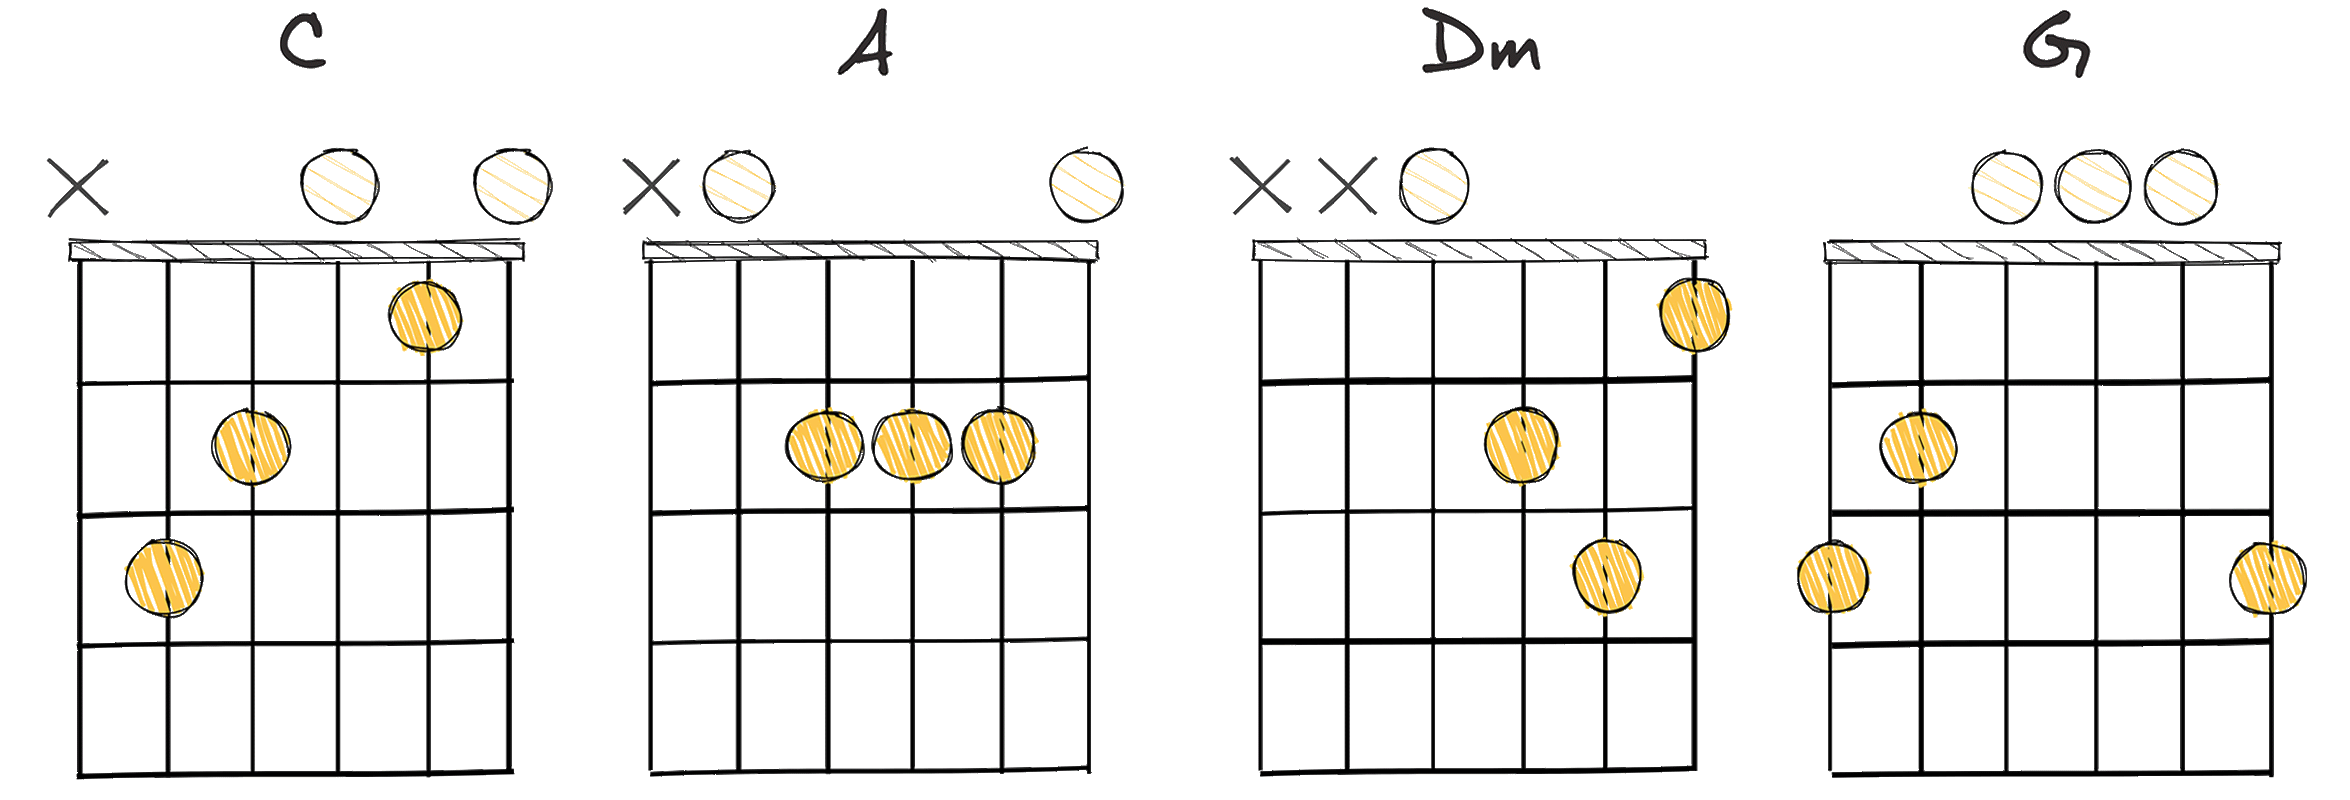 I-VI-II-V (1-6-2-5) chords diagram